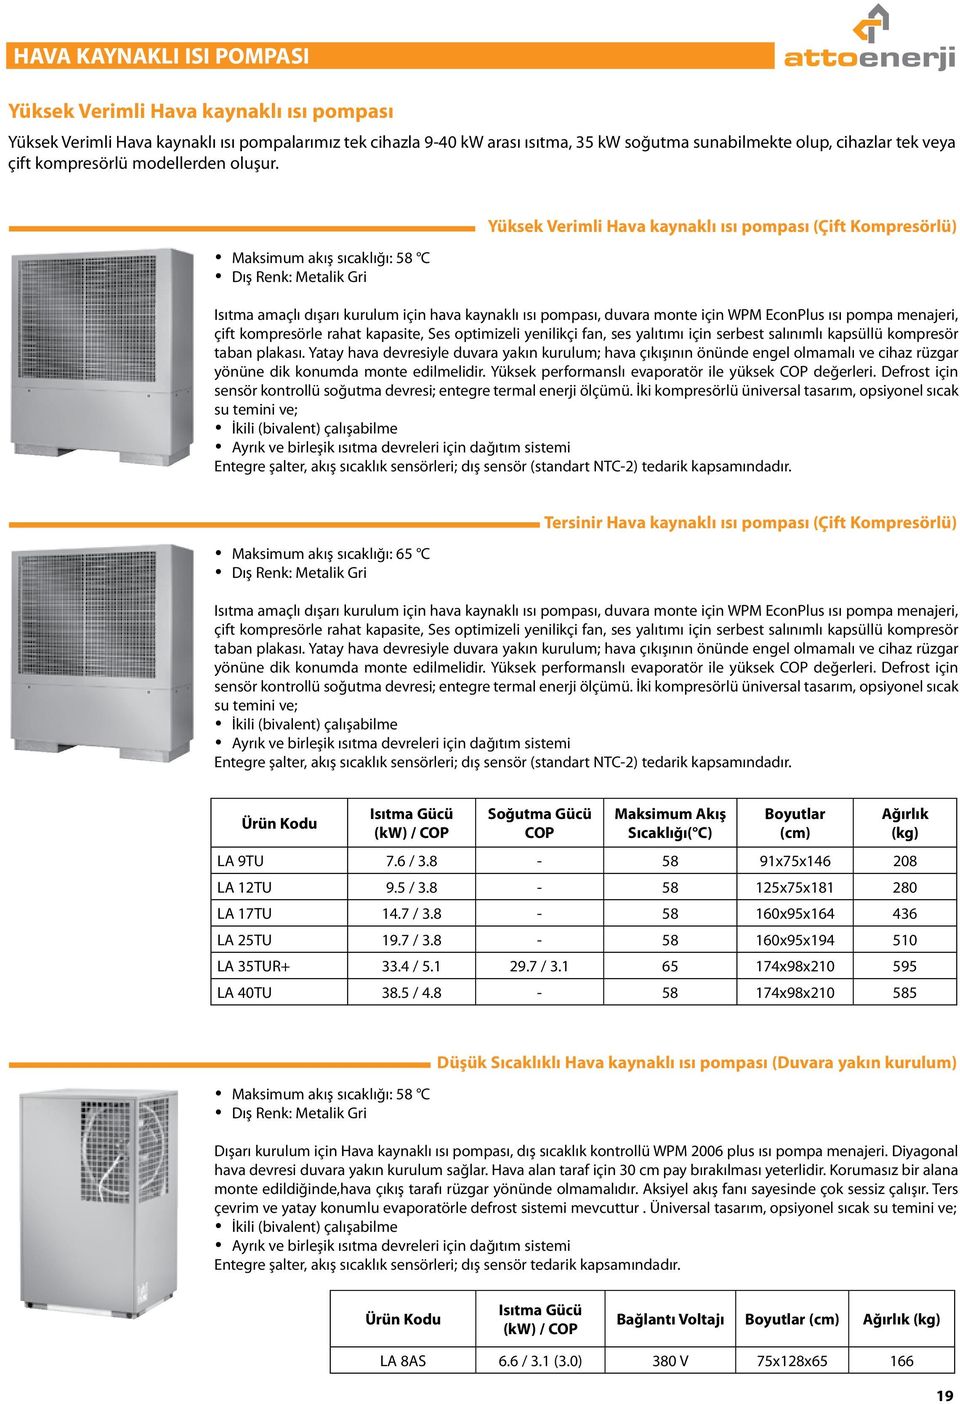 Maksimum akış sıcaklığı: 58 C Dış Renk: Metalik Gri Yüksek Verimli Hava kaynaklı ısı pompası (Çift Kompresörlü) Isıtma amaçlı dışarı kurulum için hava kaynaklı ısı pompası, duvara monte için WPM